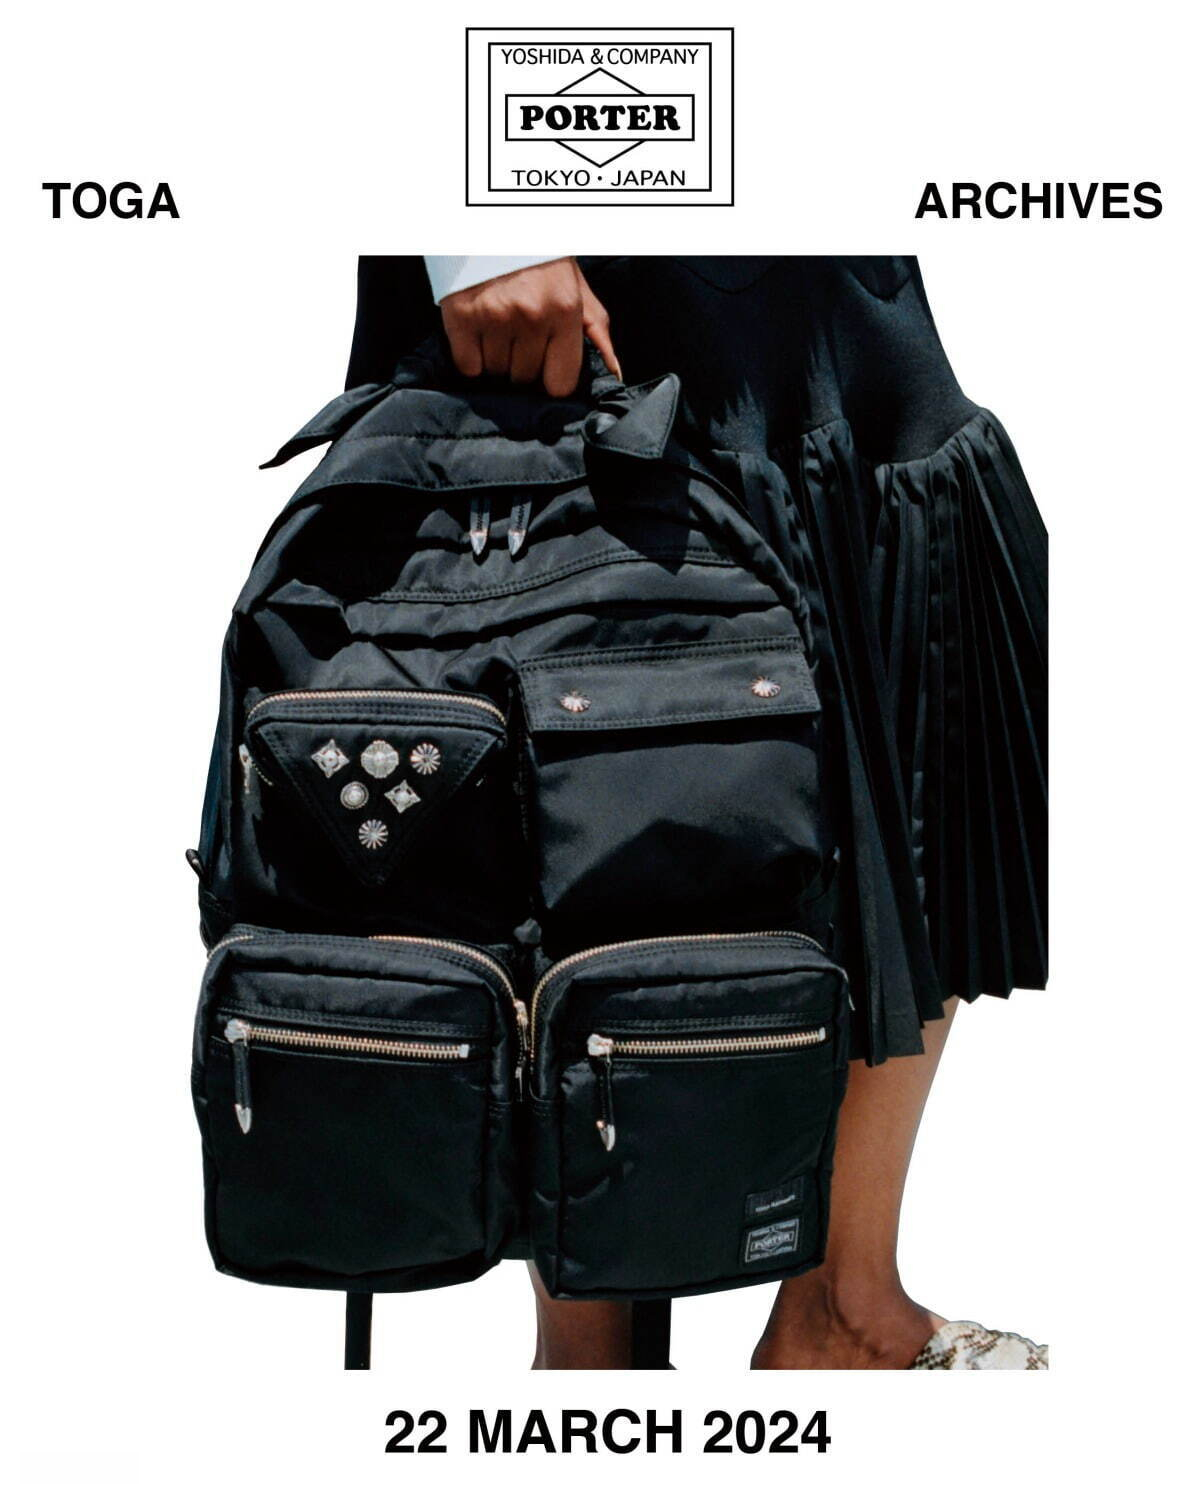 TOGA x PORTER Backpack